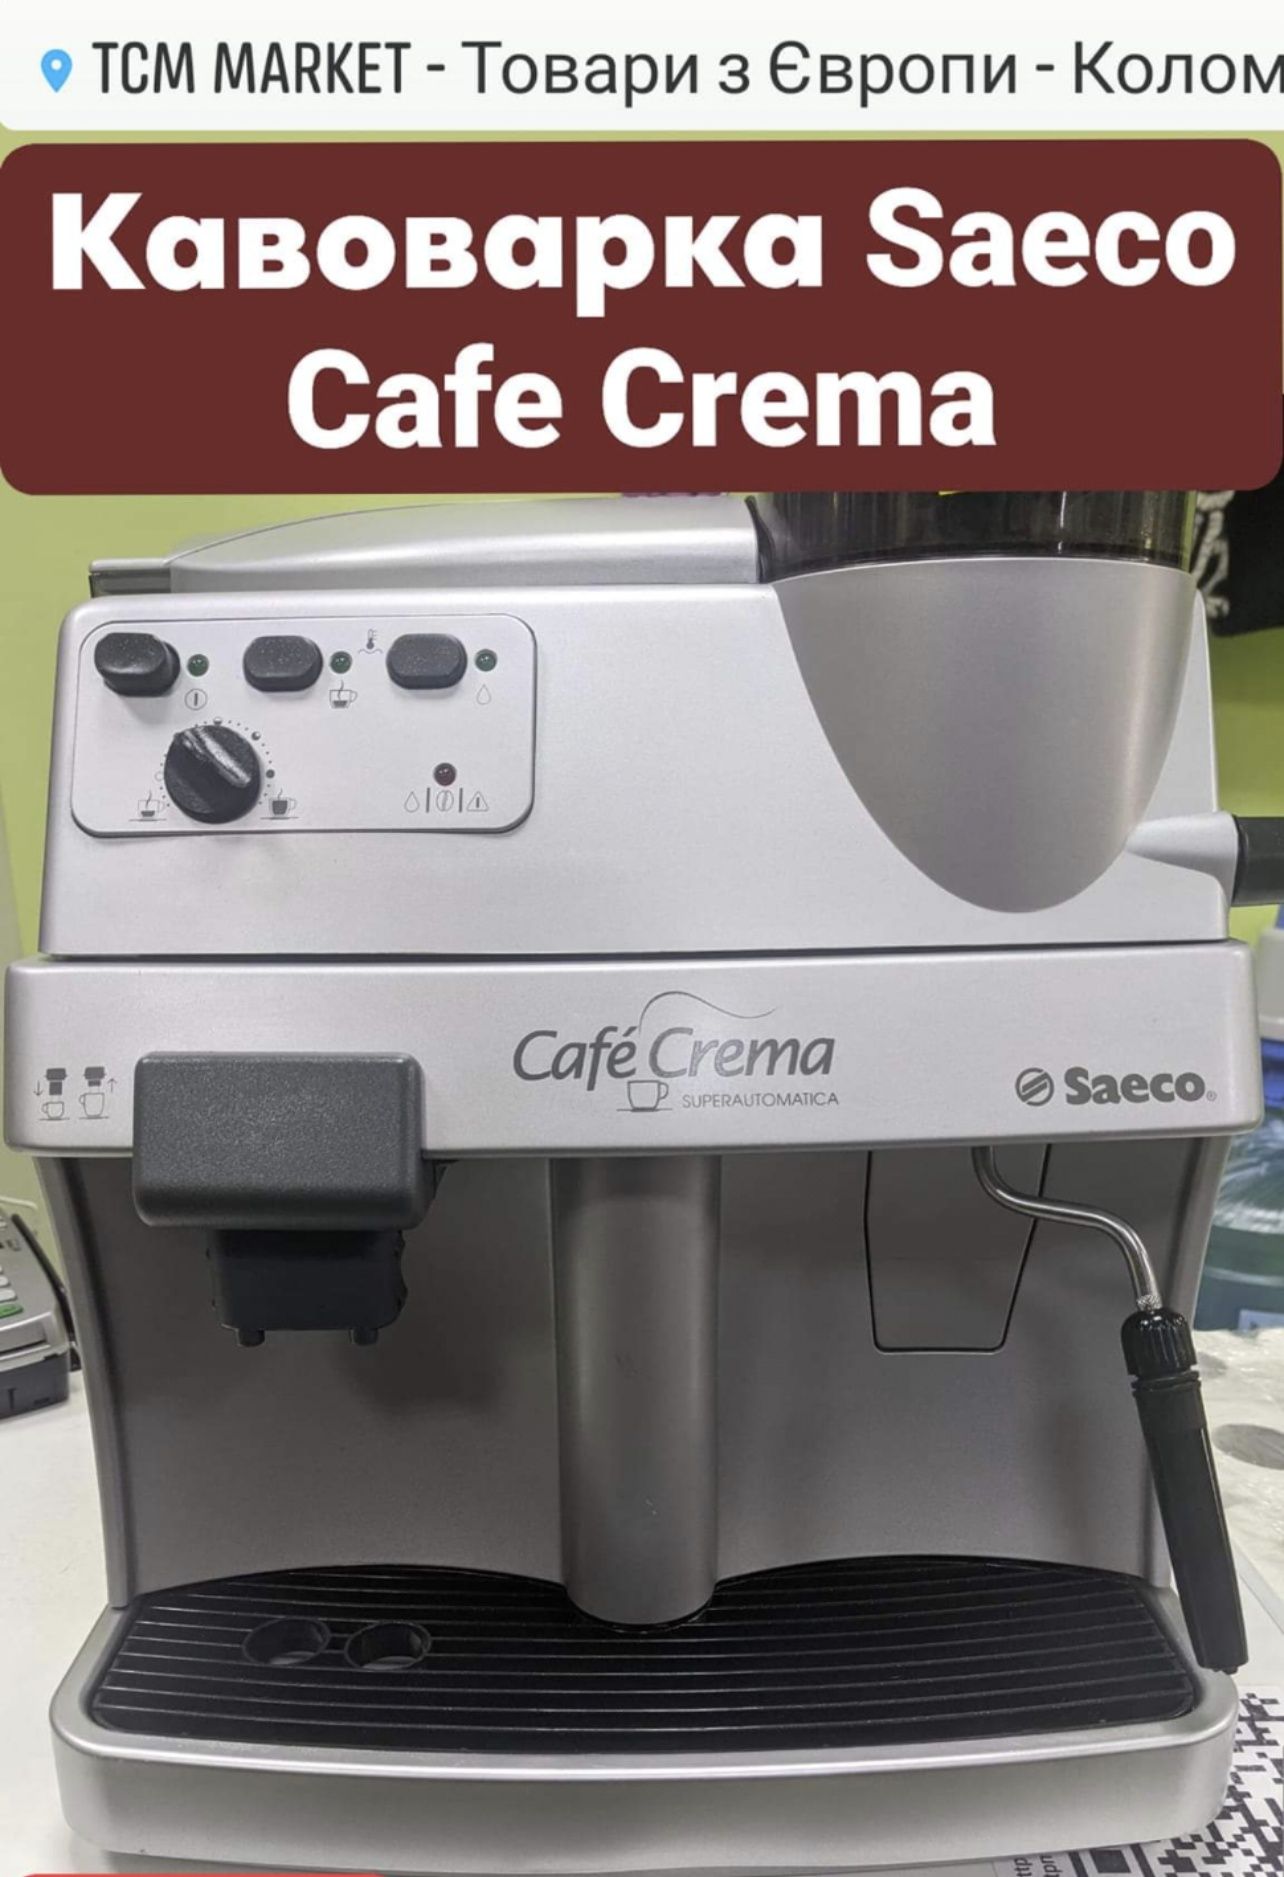 Кавоварка Saeco Cafe Orima ok